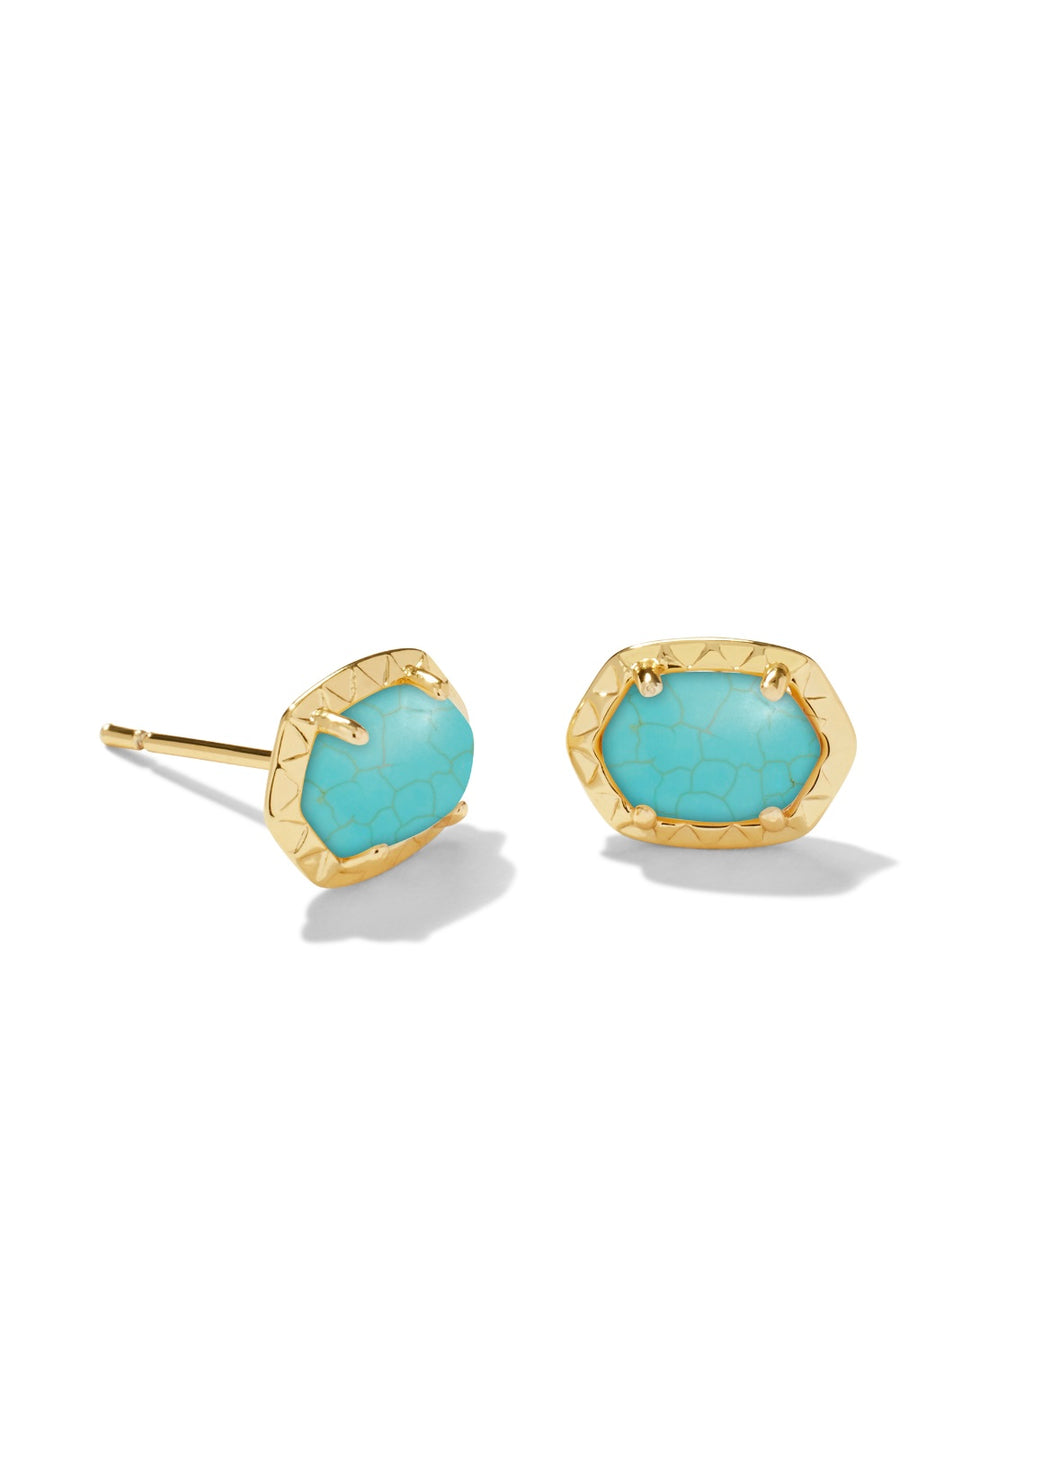 Kendra Scott: Daphne Stud Earrings in Gold Turquoise